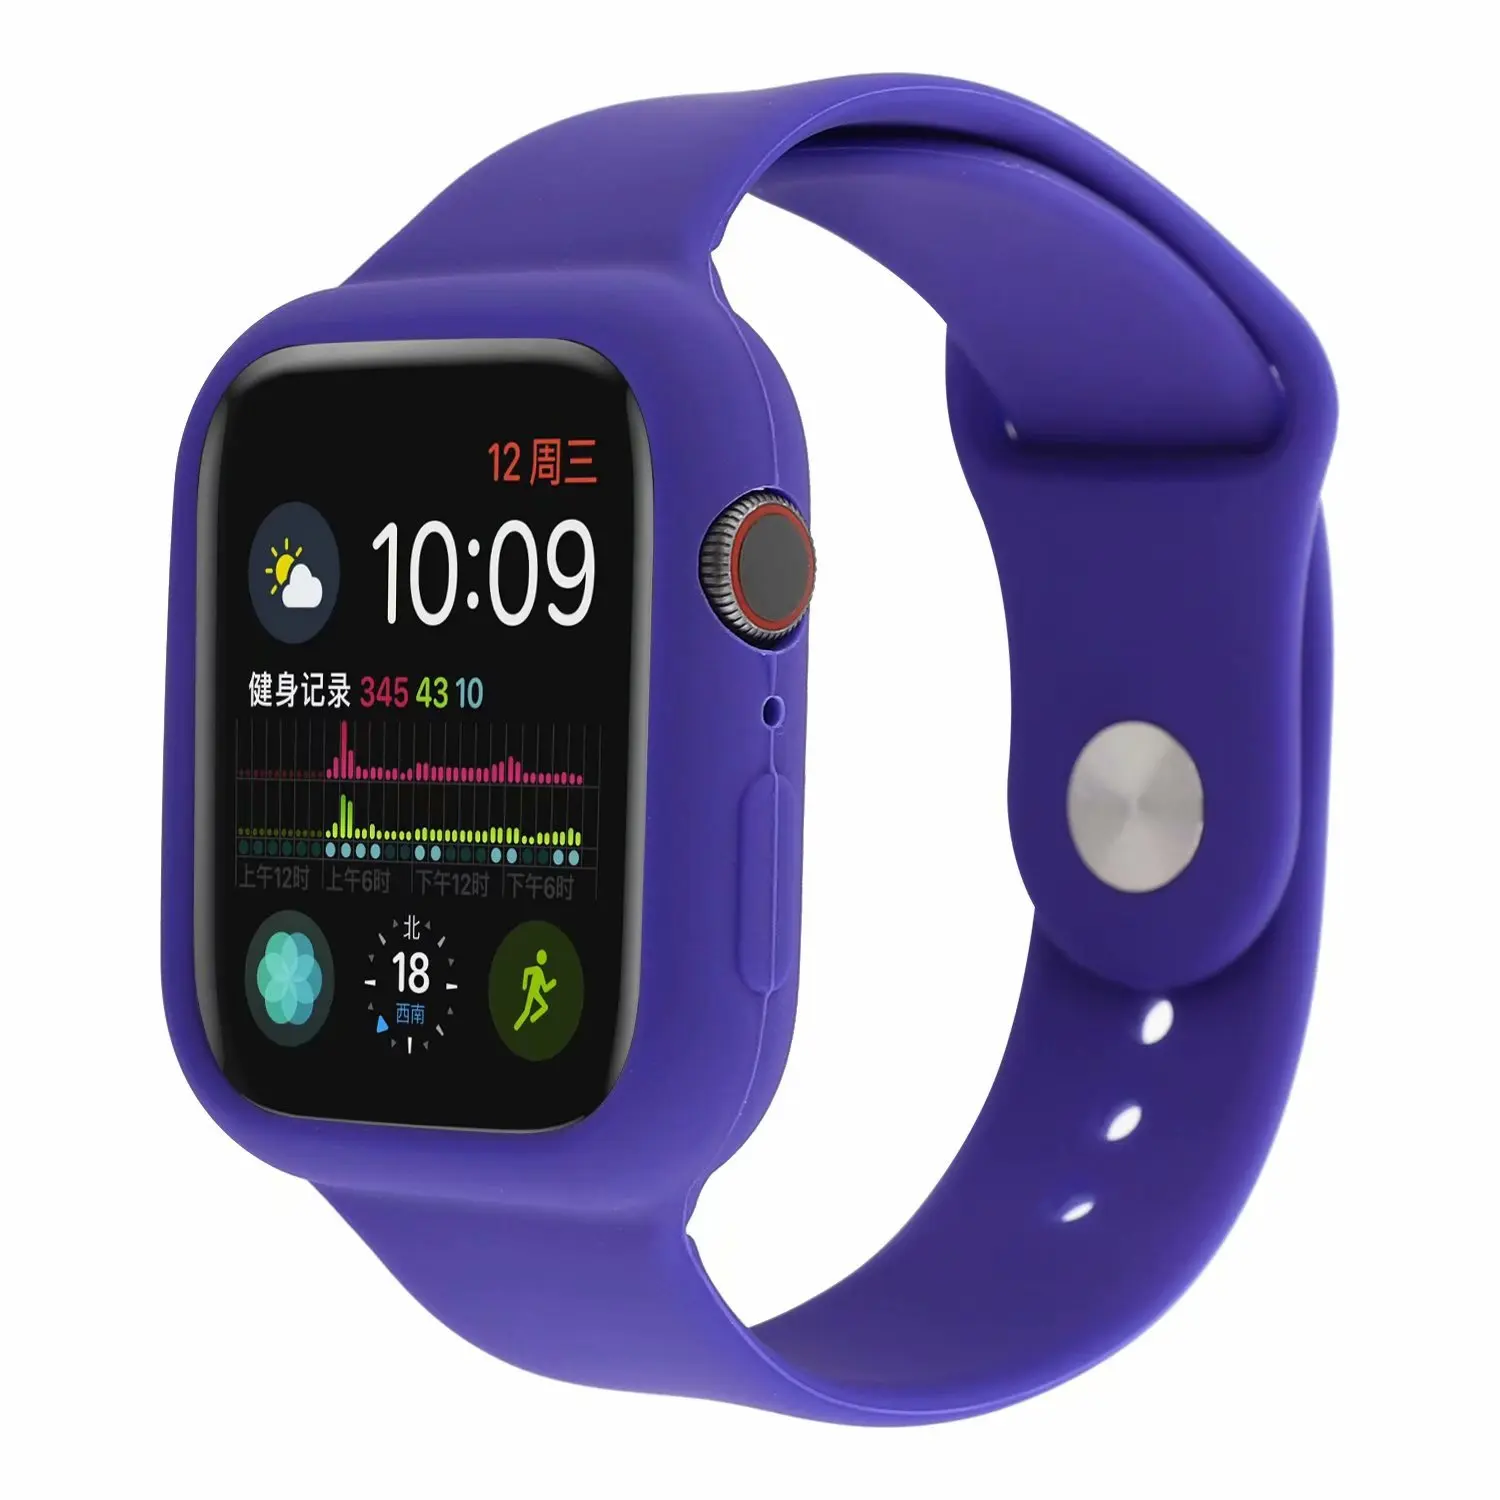 Силиконовый защитный apple watch 44 мм и браслет apple watch 40 мм спортивный ремешок Бампер протектор для iwatch 42 мм серии 3 2 1 38 мм